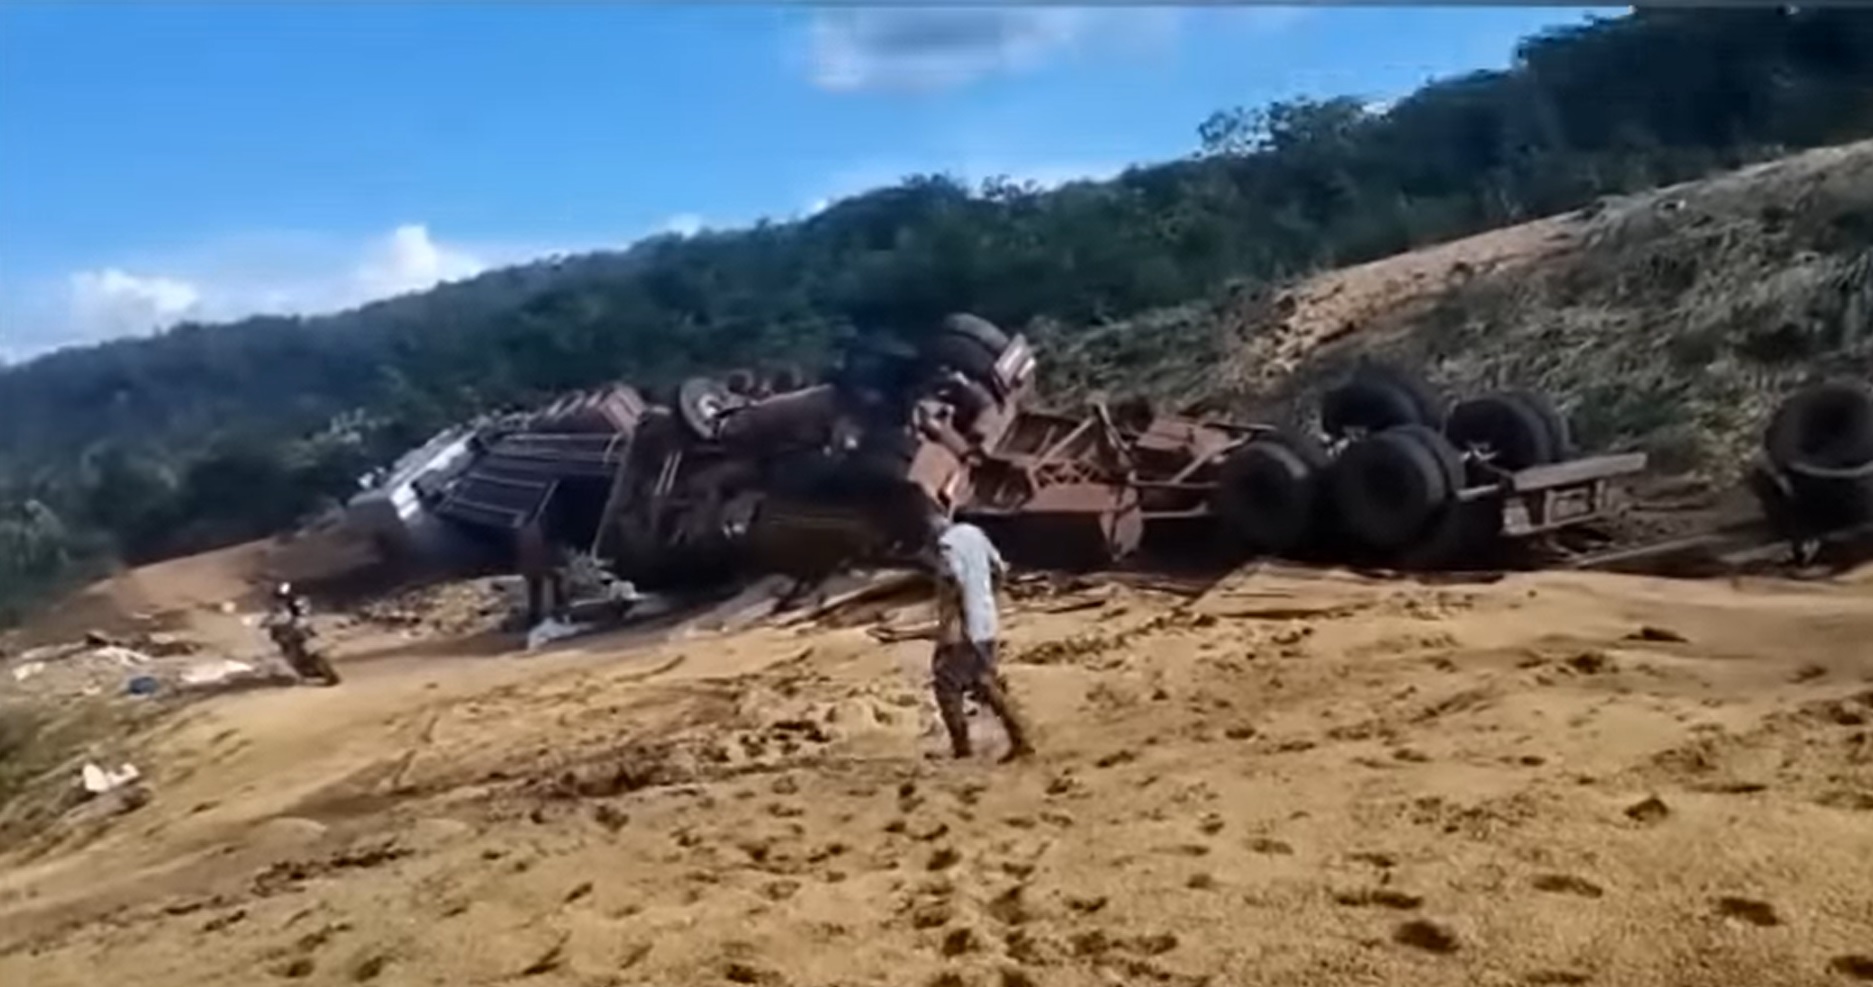 Caminhão tomba em cima de outro, já tombado, na curva Barra da Volta, Piauí